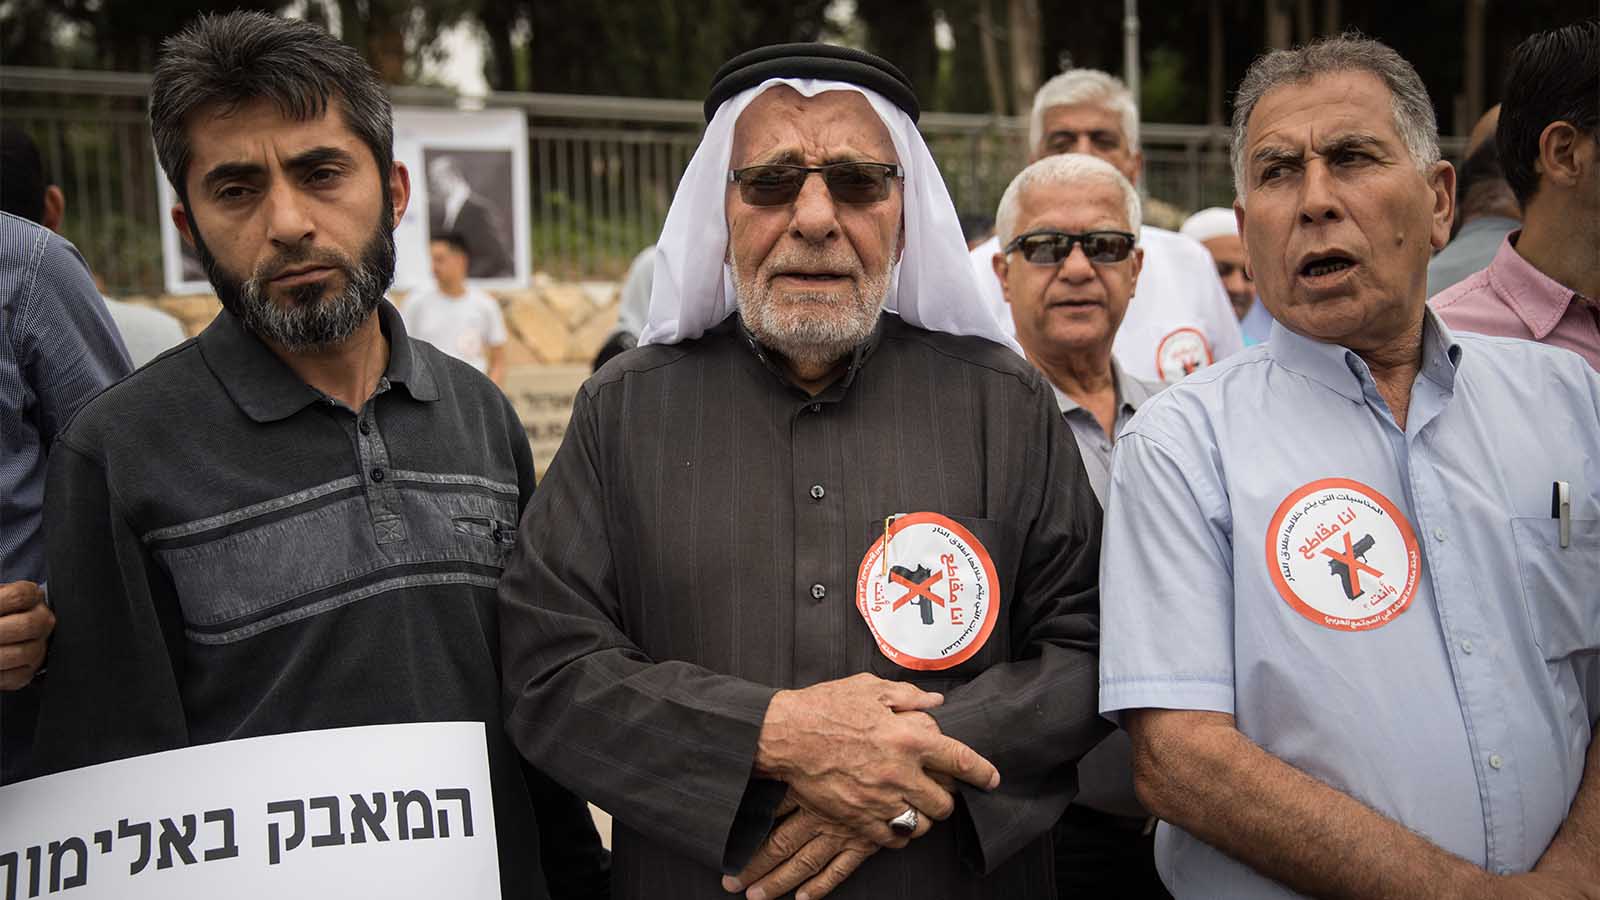 قياديون عرب وأعضاء كنيست في مظاهرة ضد السلاح غير القانوني وعجز الشرطة (تصوير: هداس فروش / فلاش 90)